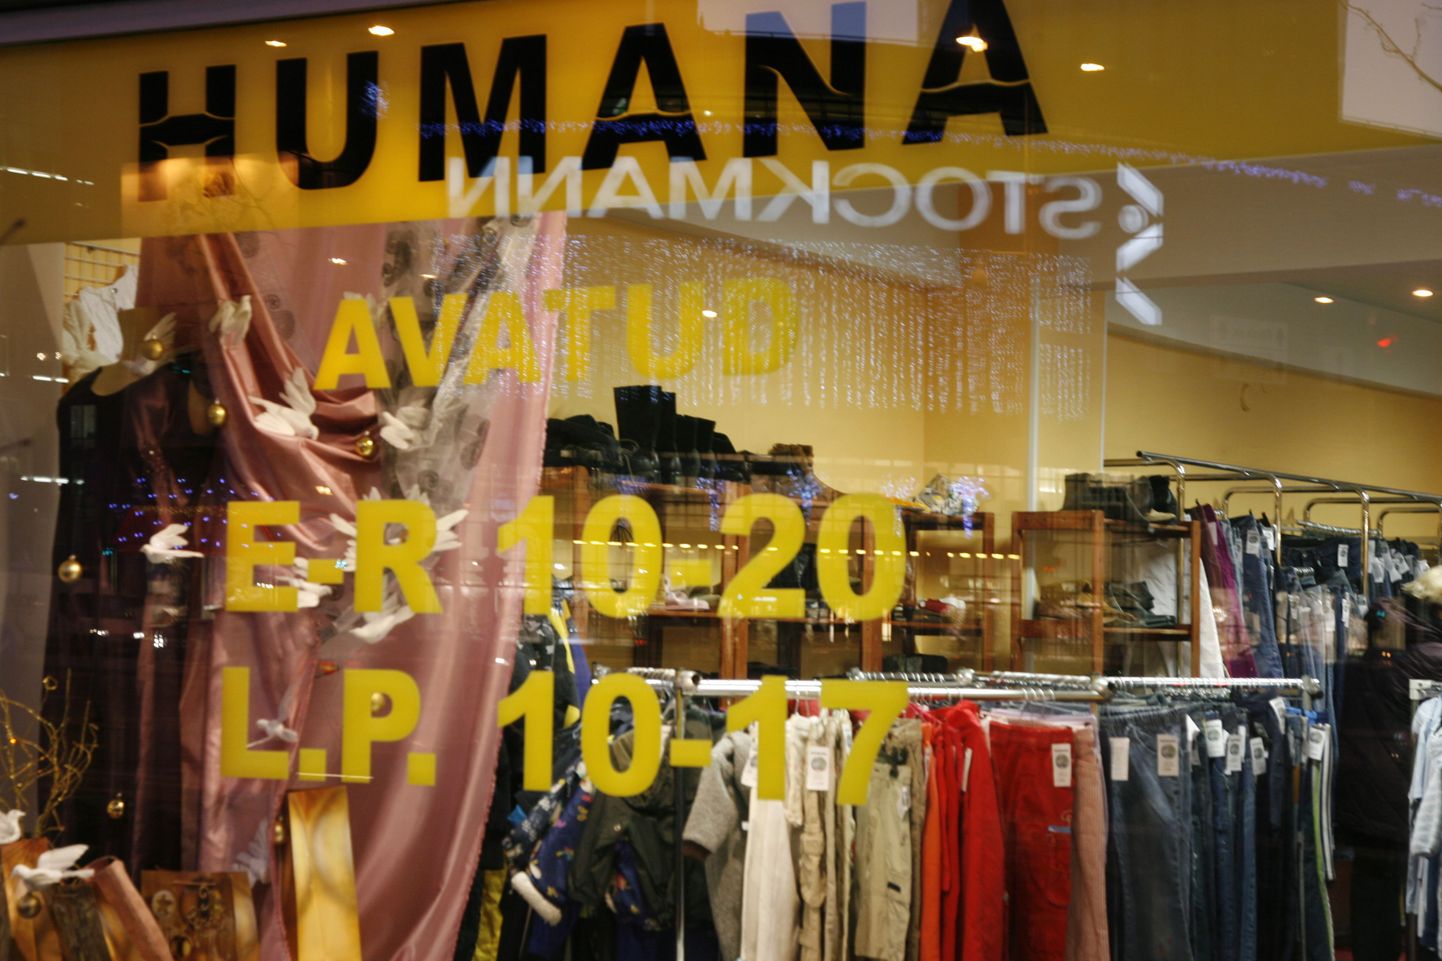 Kasutatud riiete pood Humana.